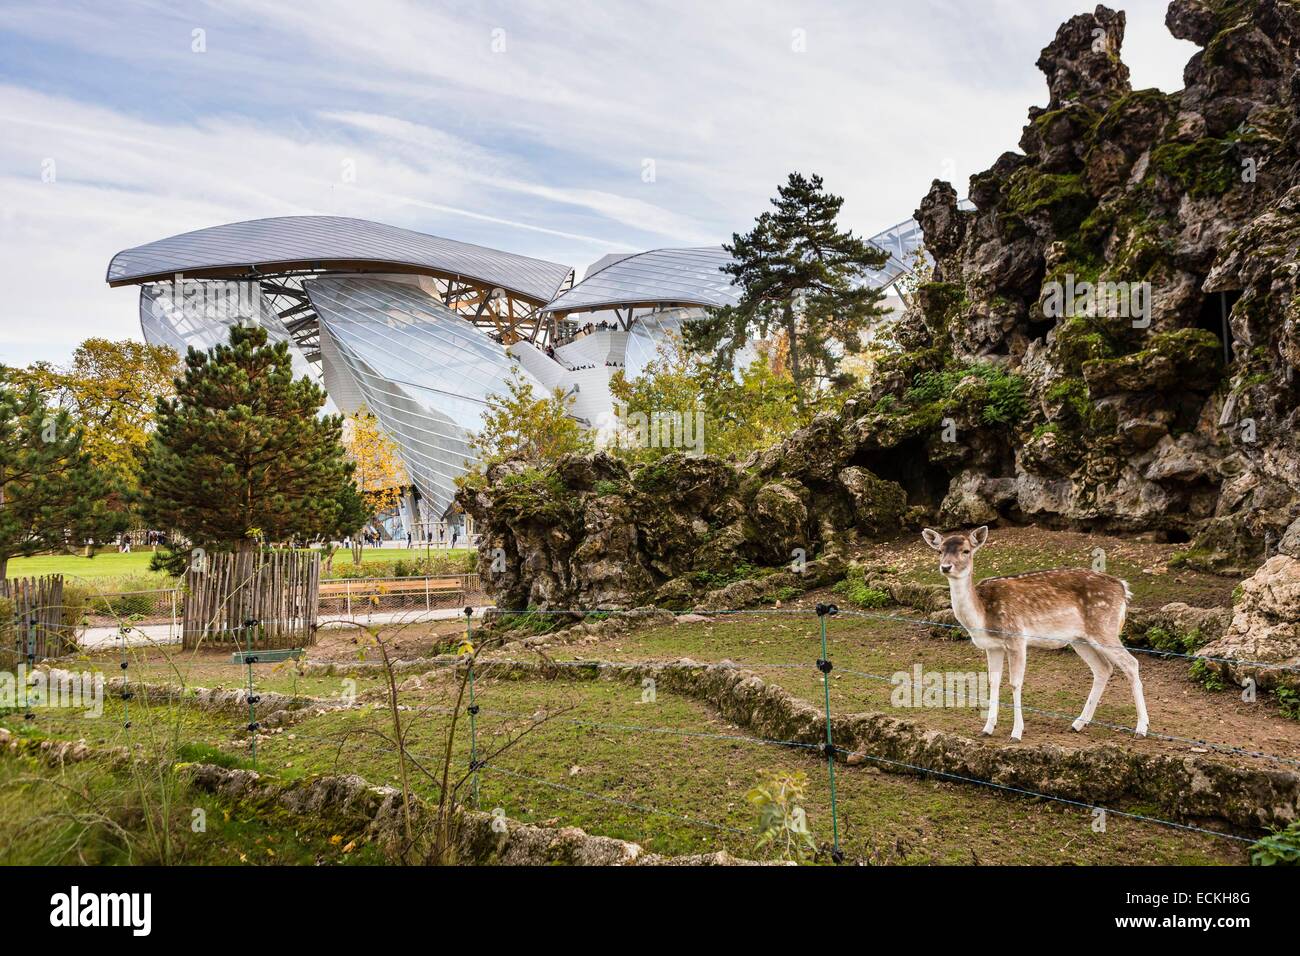 France, Paris, Bois de Boulogne, the Louis Vuitton Foundation by Stock  Photo - Alamy